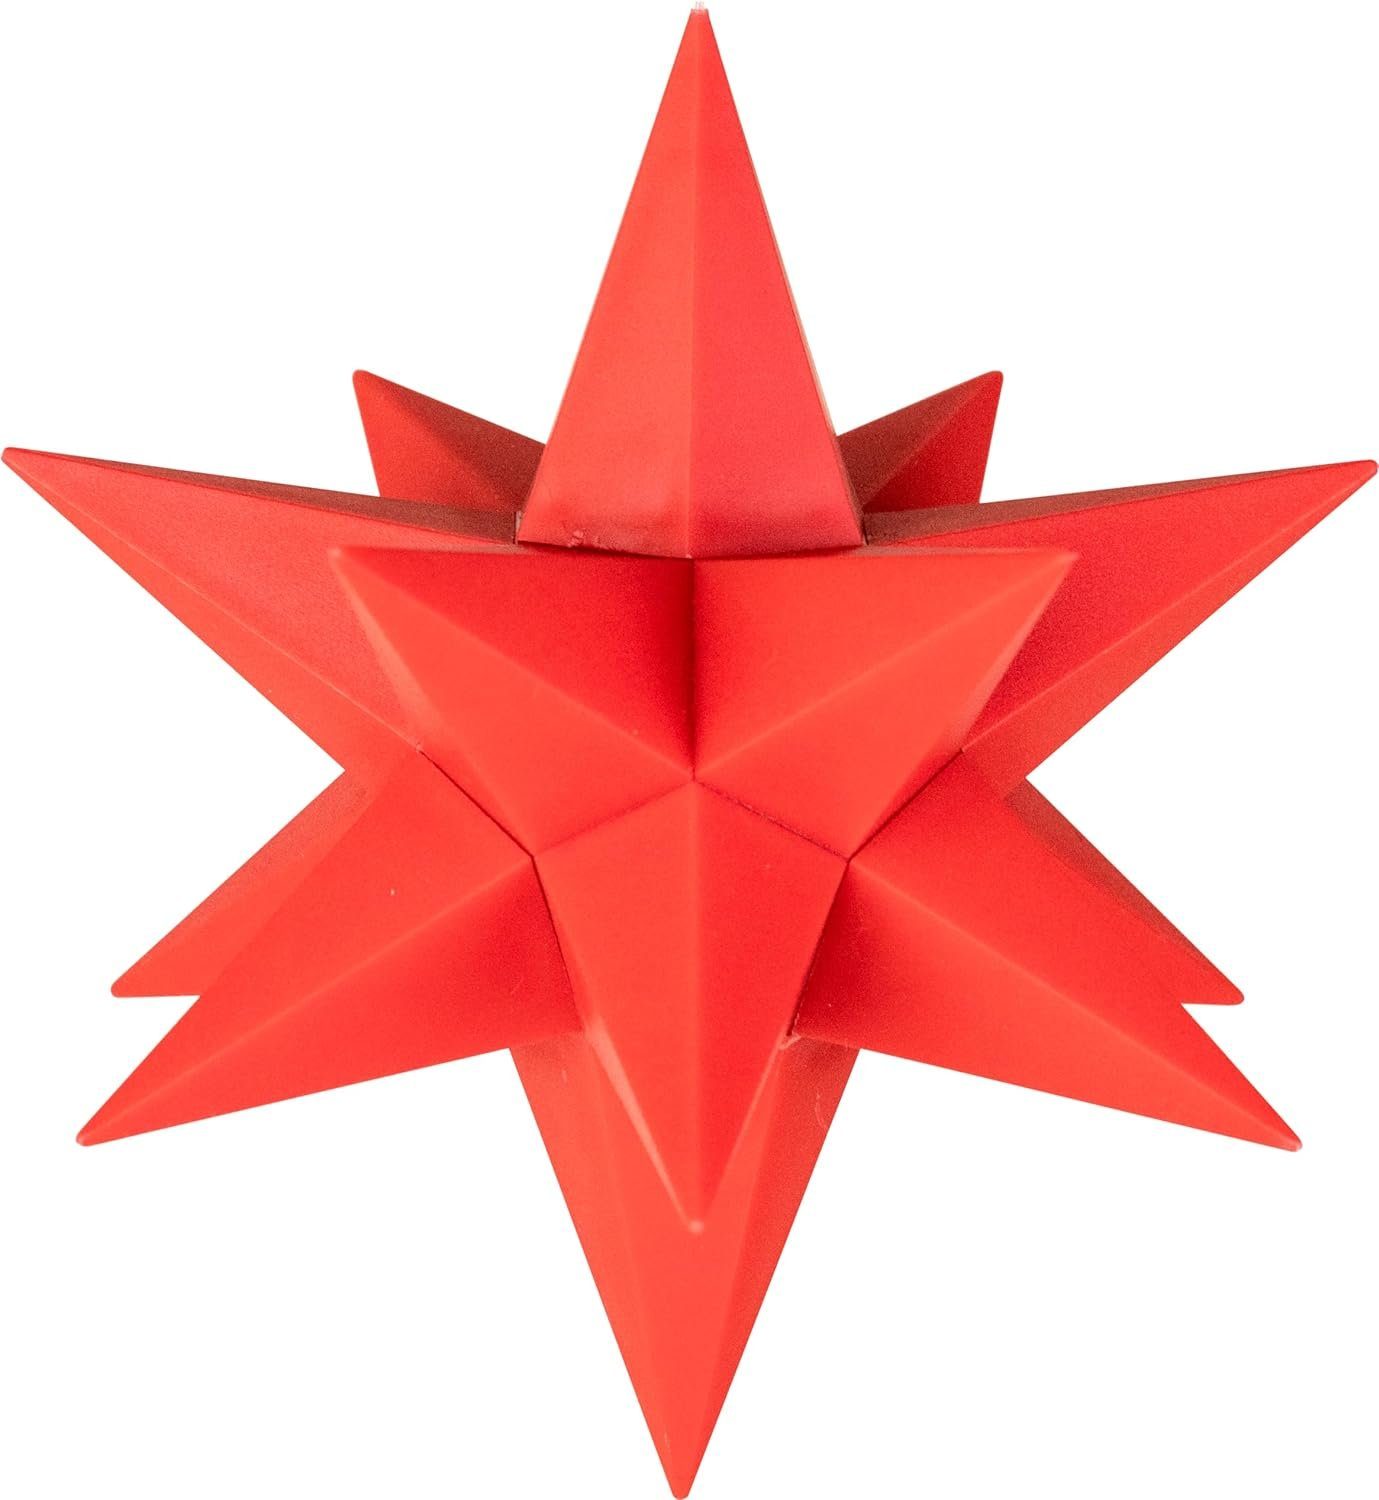 Batterie LED von Star-Max Stern rot LED inkl. 35711 Erweiterung Stern Art zur Schwebender